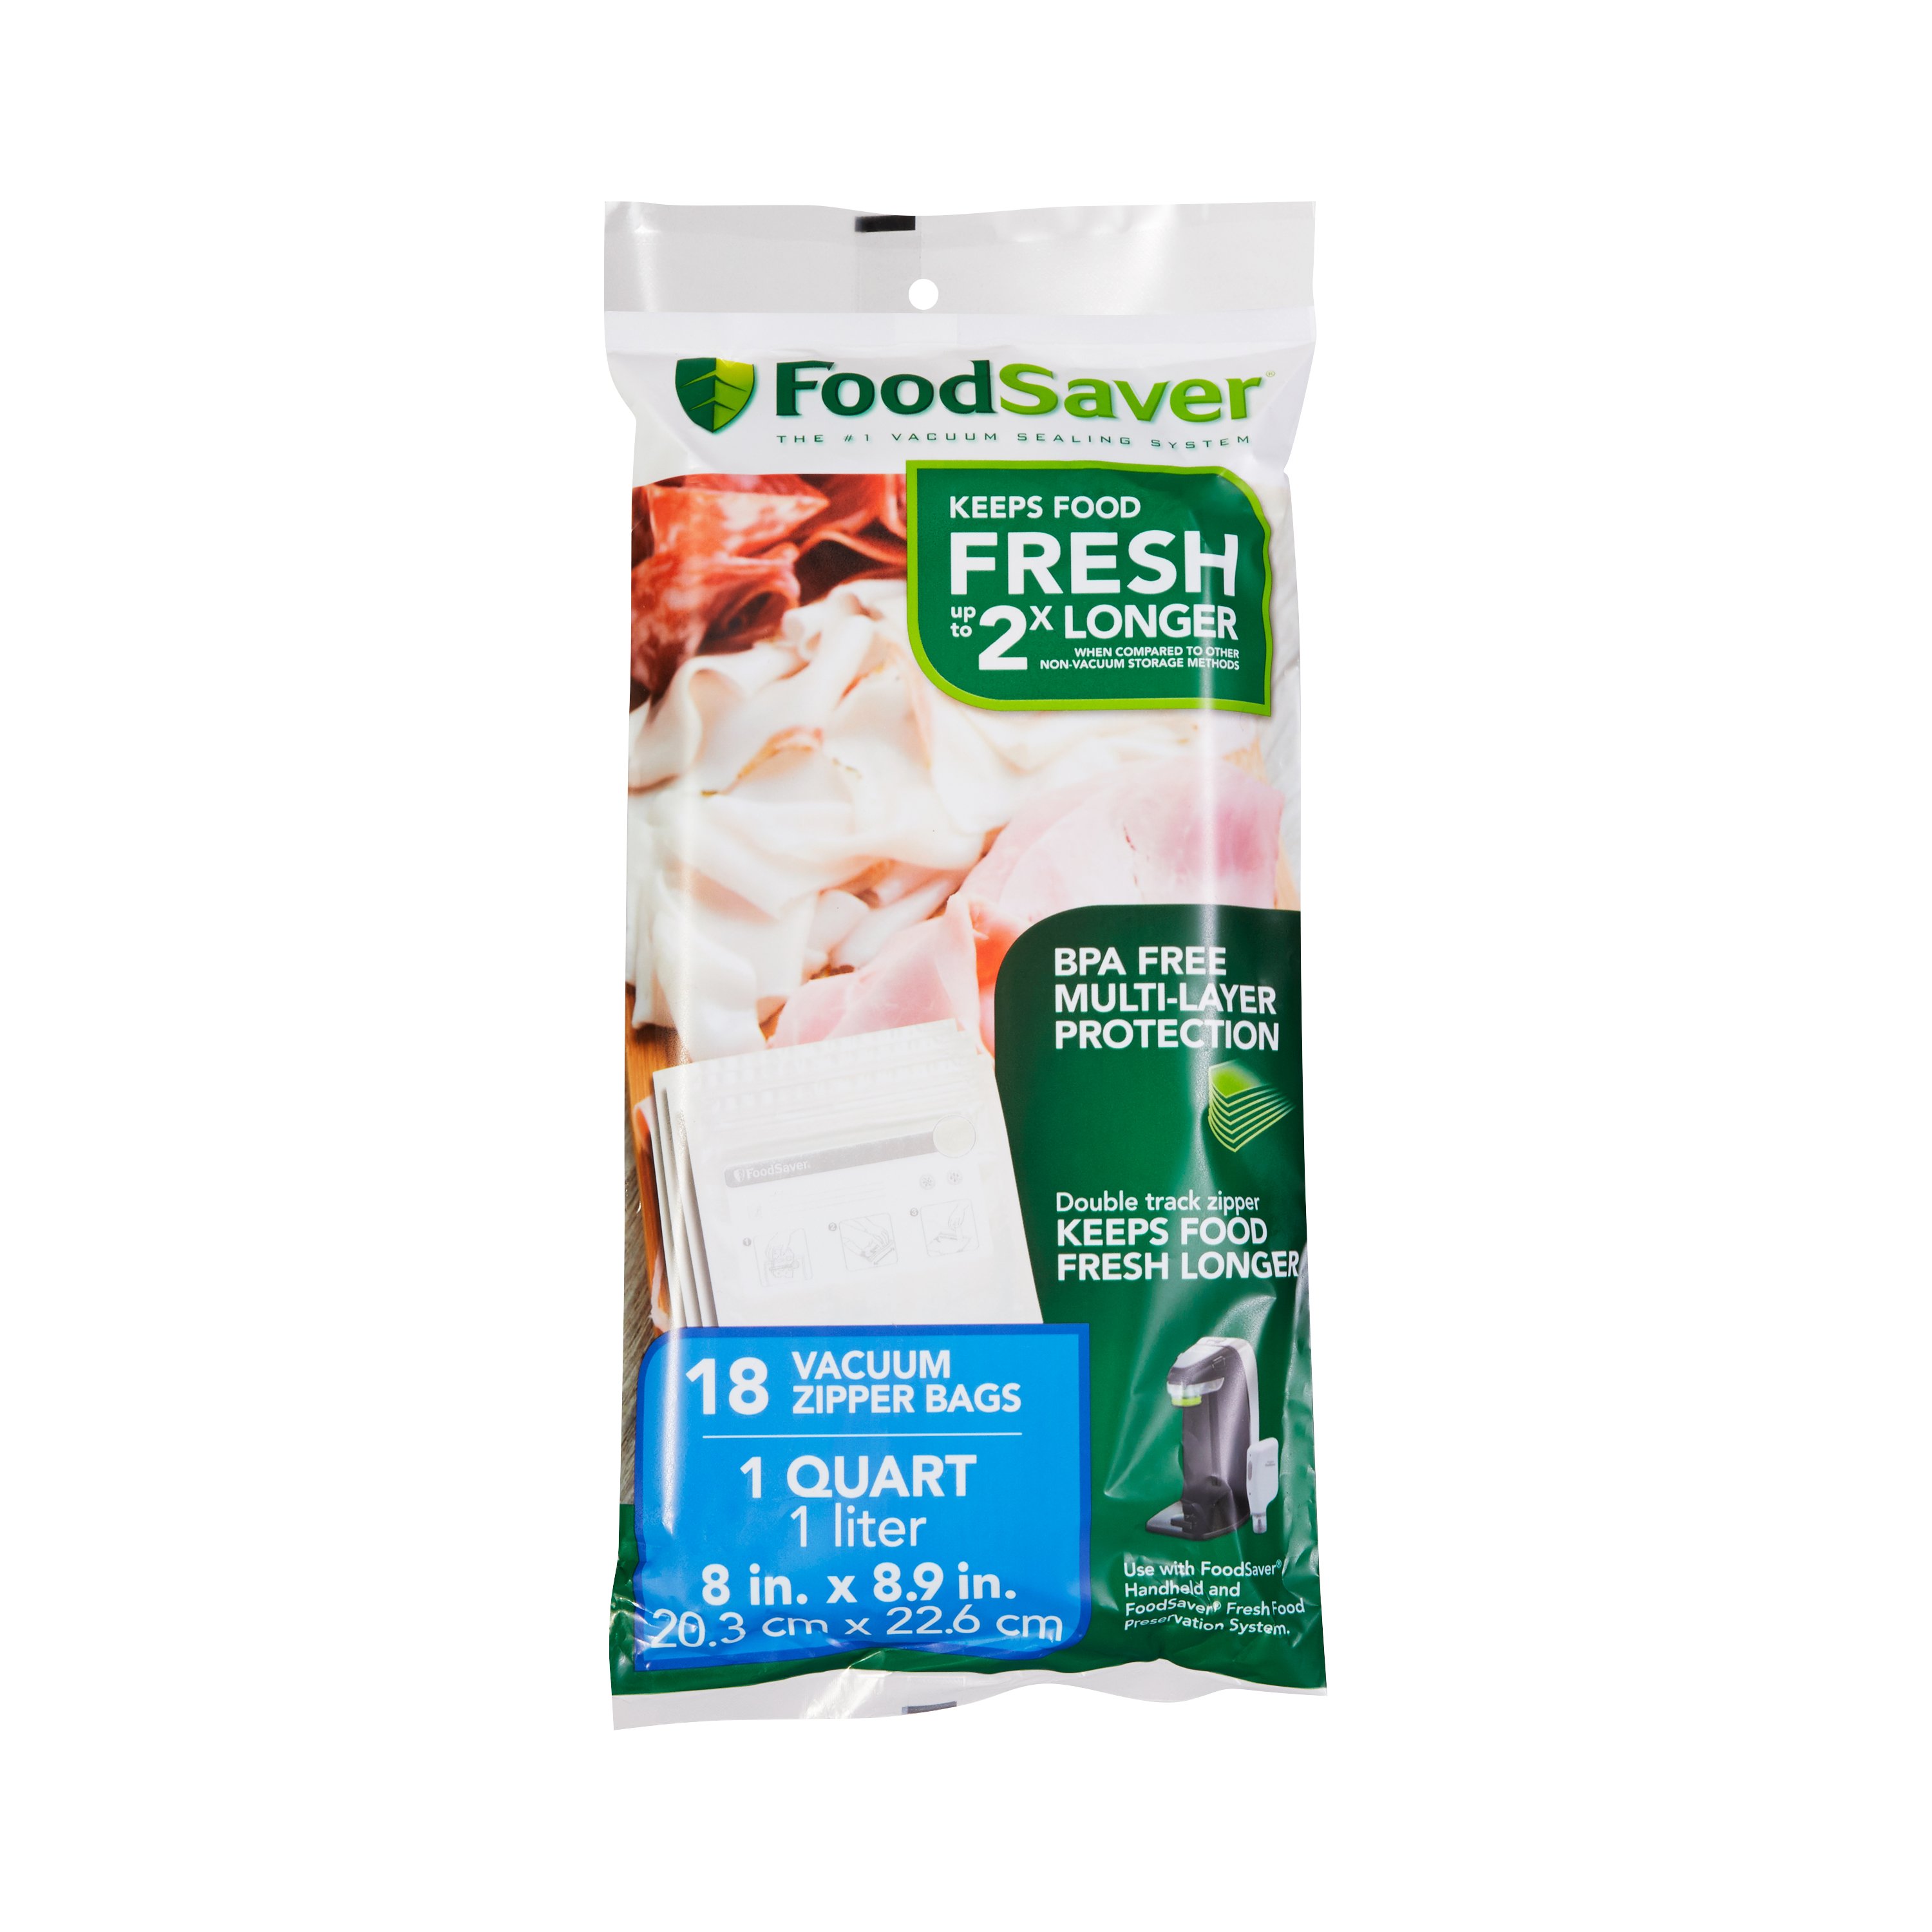 FoodSaver 1-Quart Precut Vacuum Seal Bags with BPA-Free Multilayer